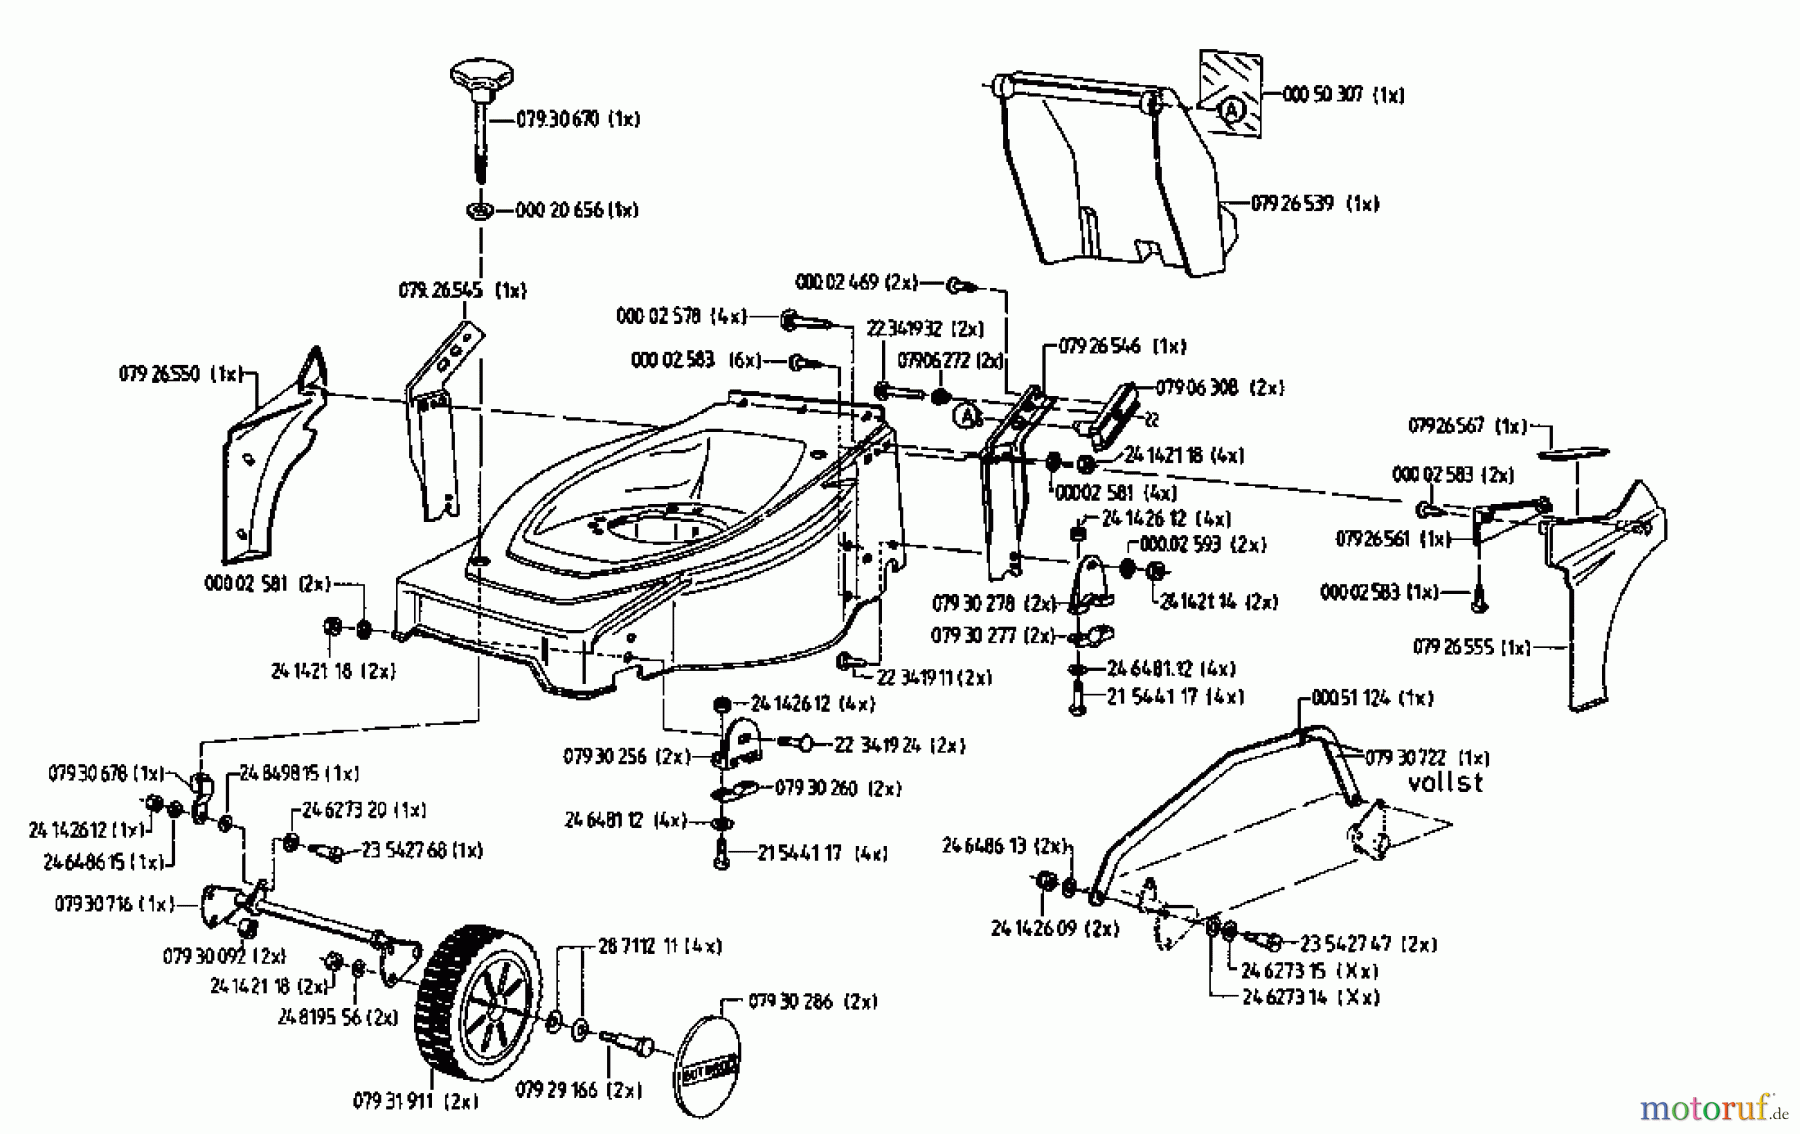  Gutbrod Tondeuse thermique tractée HB 42 RL 04029.01  (1996) Machine de base